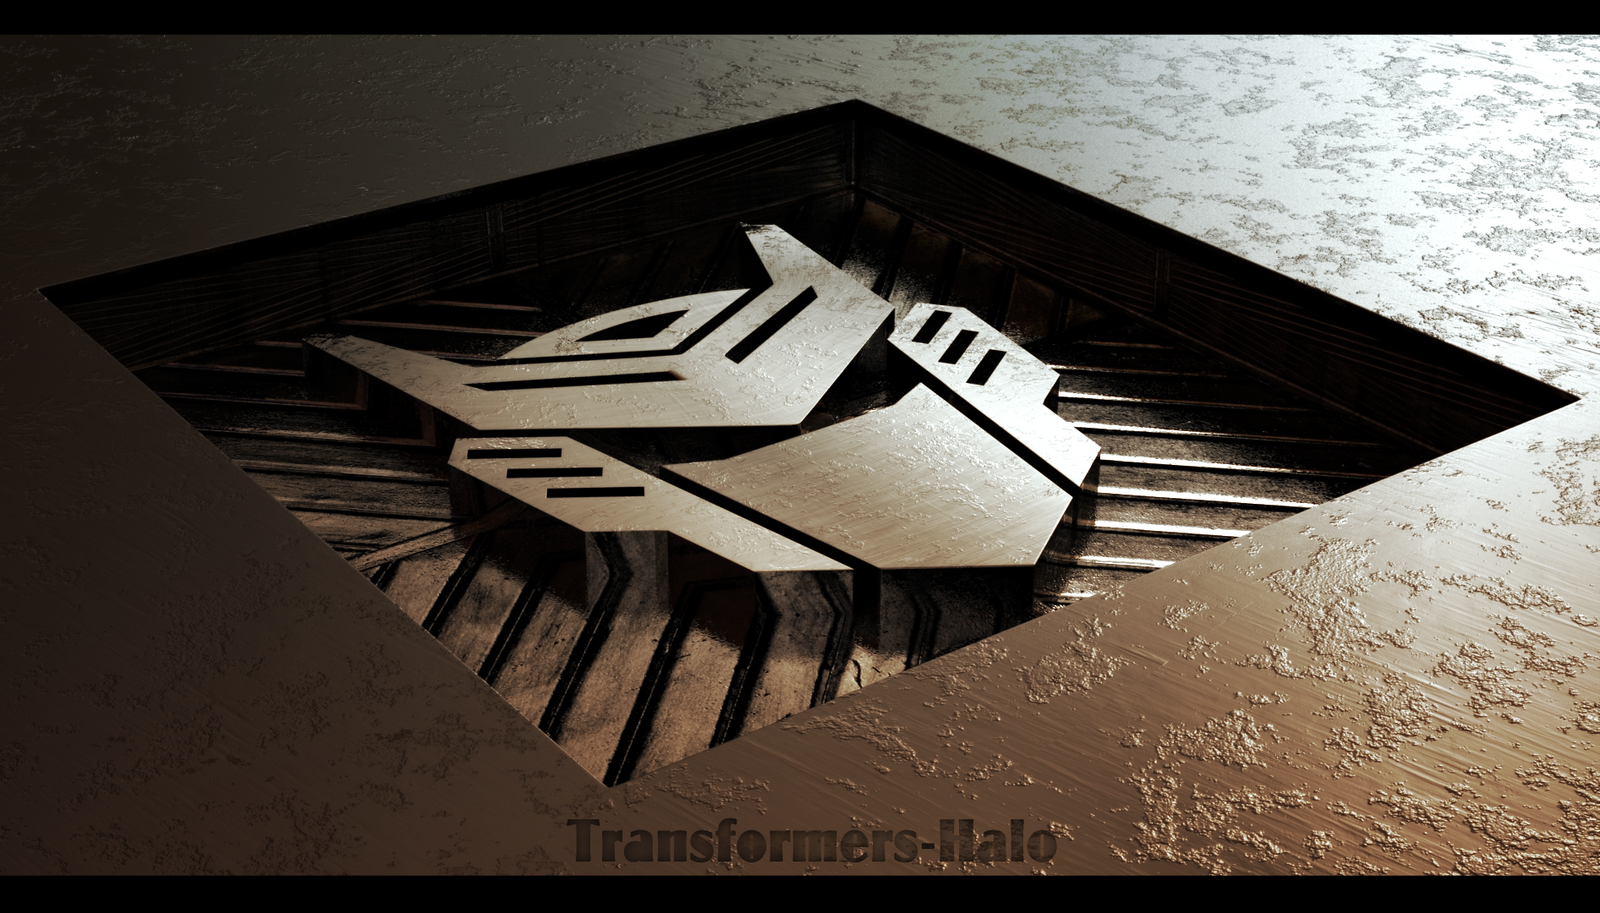 Autobot 3D Wallpaper by DjReko by Transformers-Halo on ...